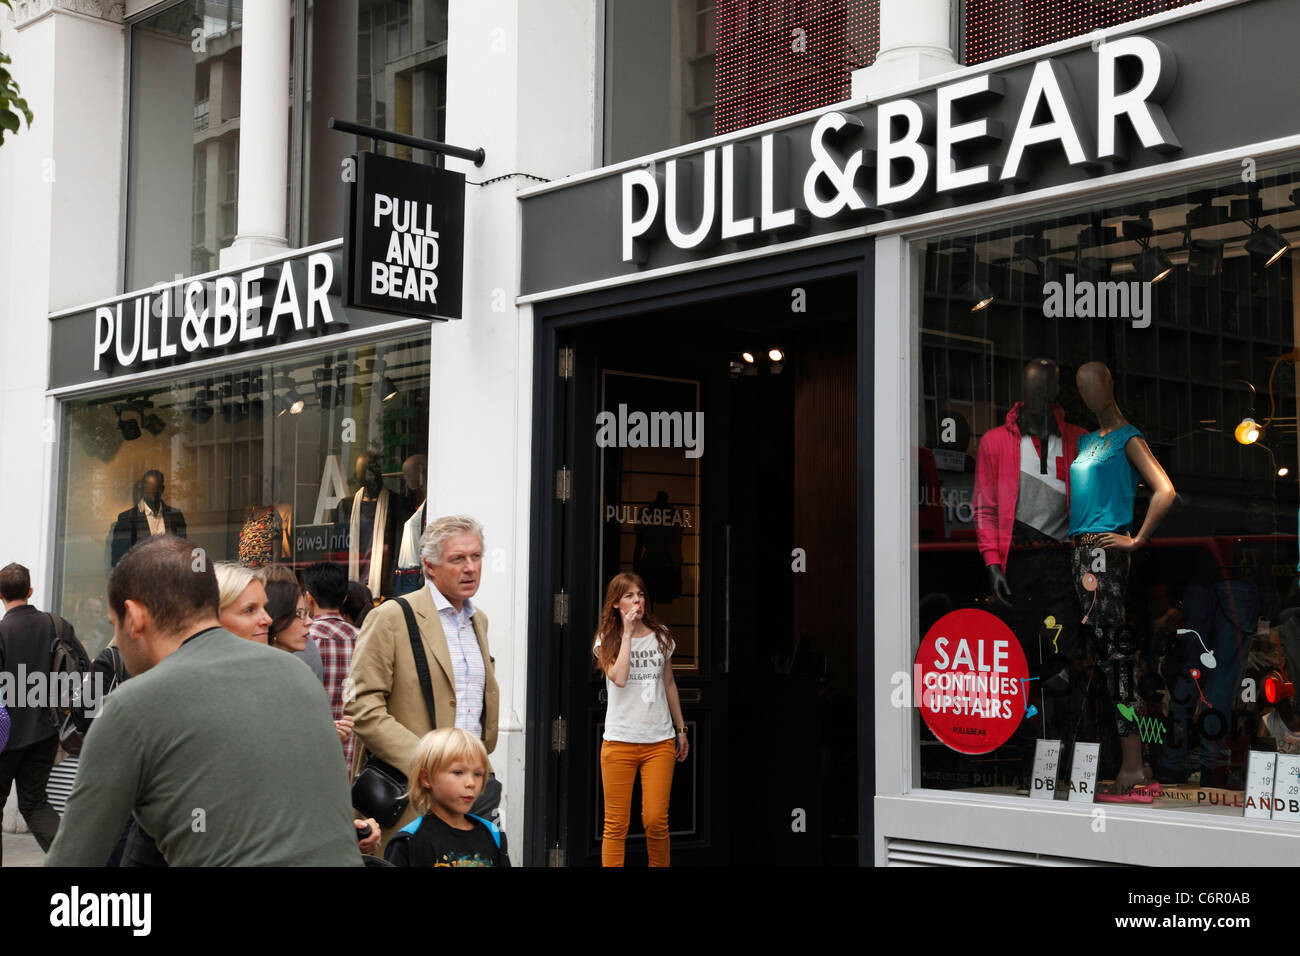 Pull & bear fotografías e imágenes alta resolución - Alamy